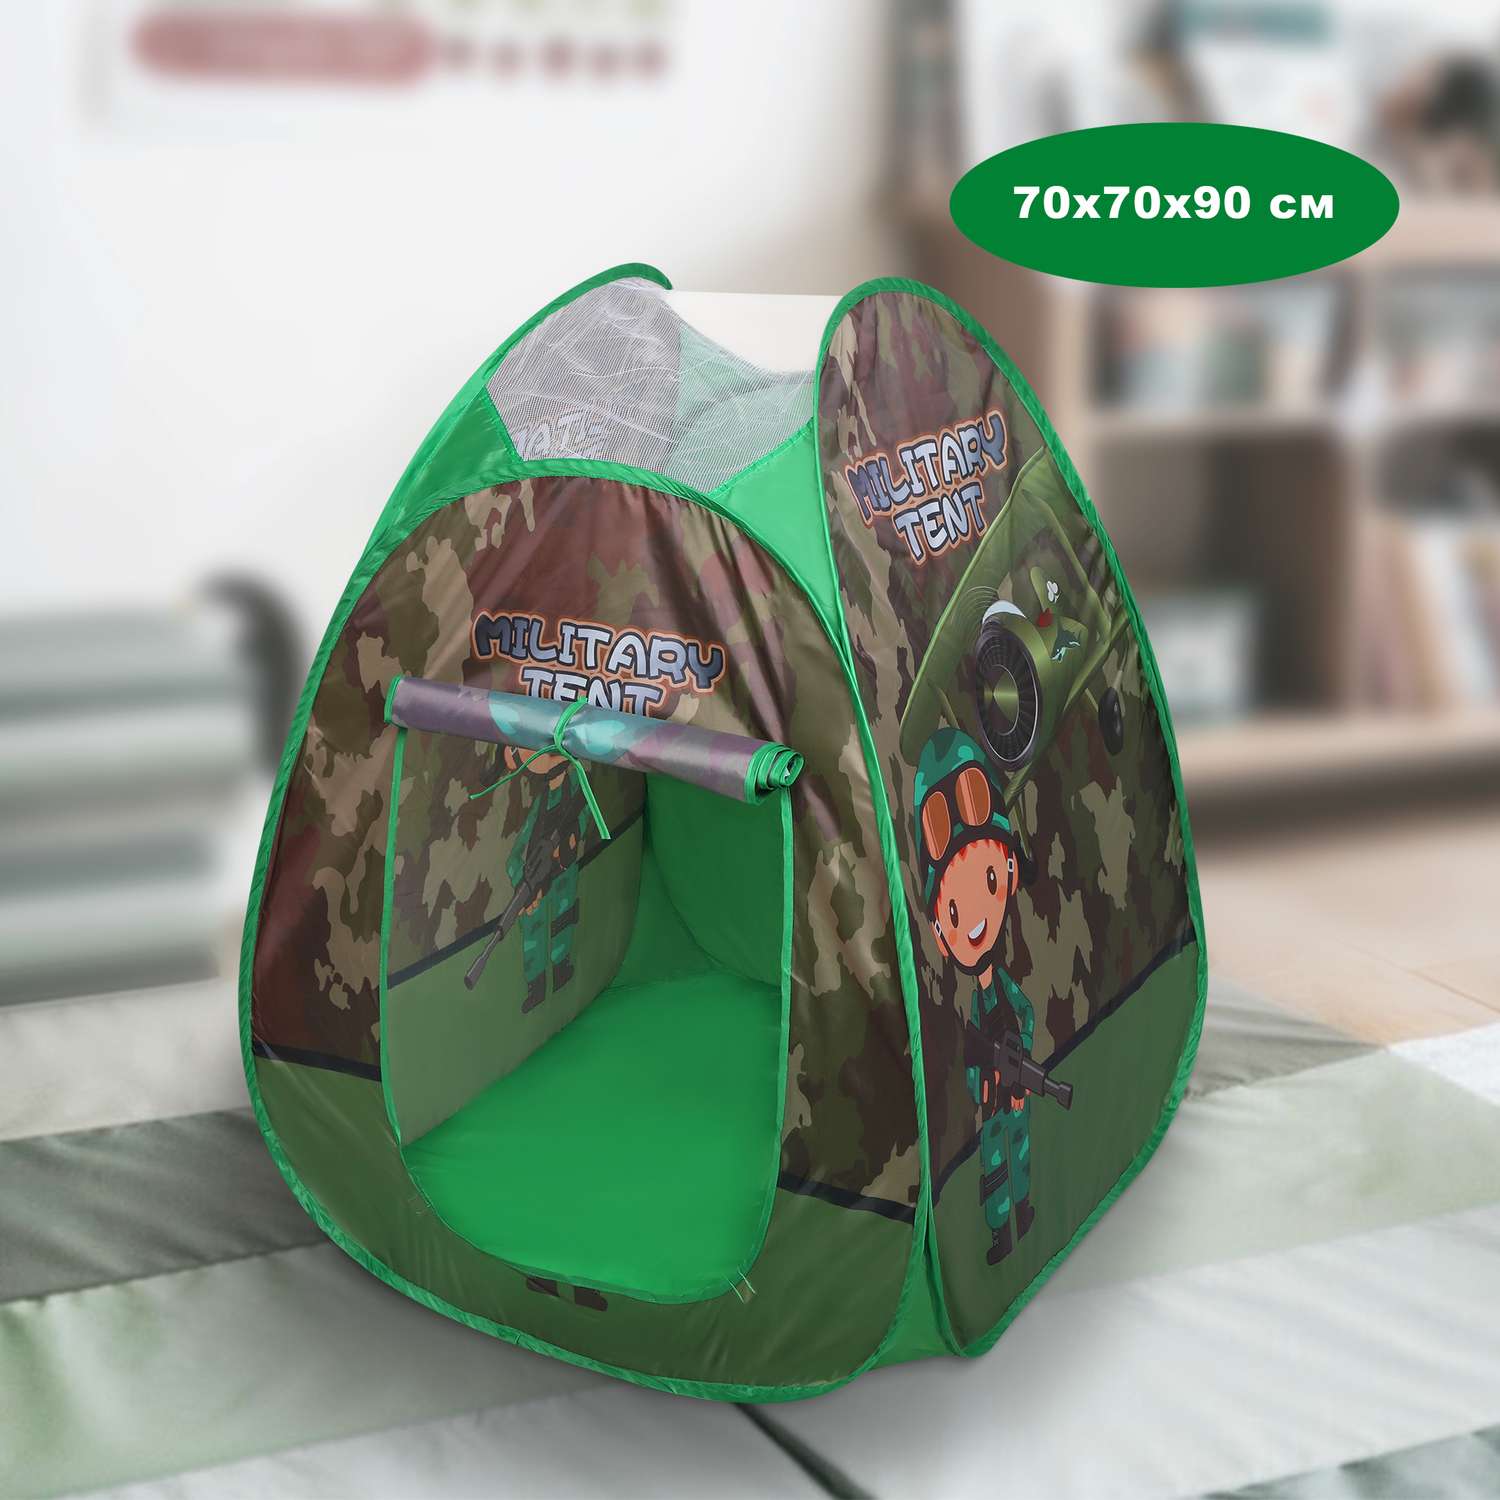 Детская палатка Наша Игрушка Военный шатер 70х70х90 см в сумке - фото 1